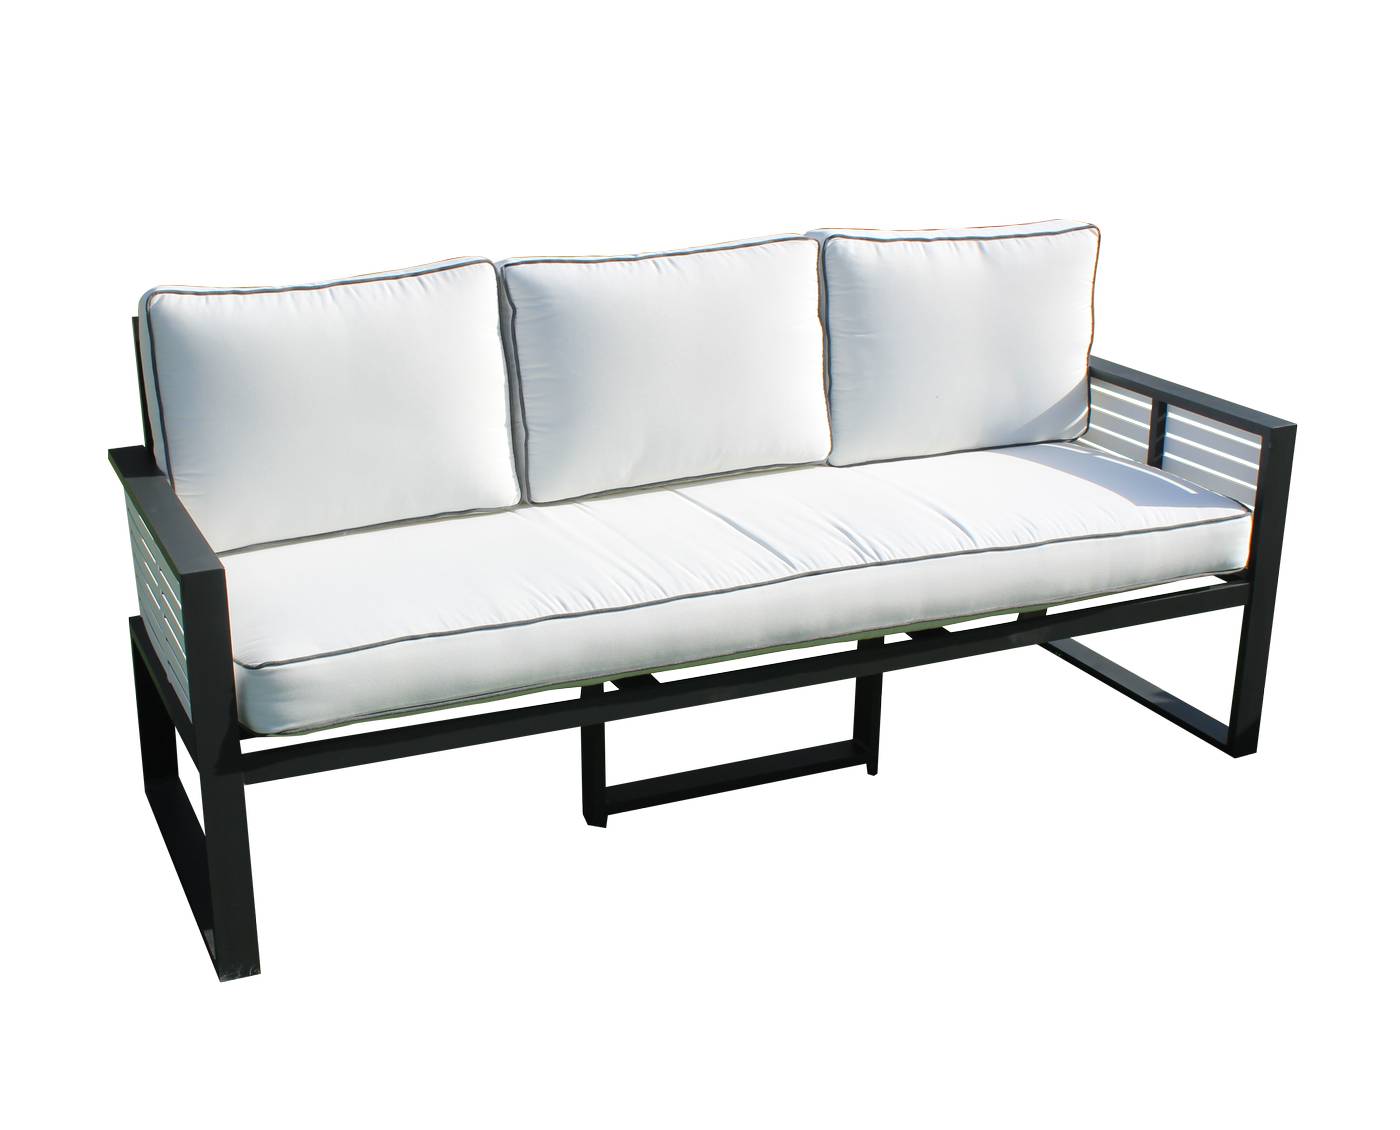 Lujoso sofá 3 plazas de alumnio bicolor, con cojines gran confort desenfundables.